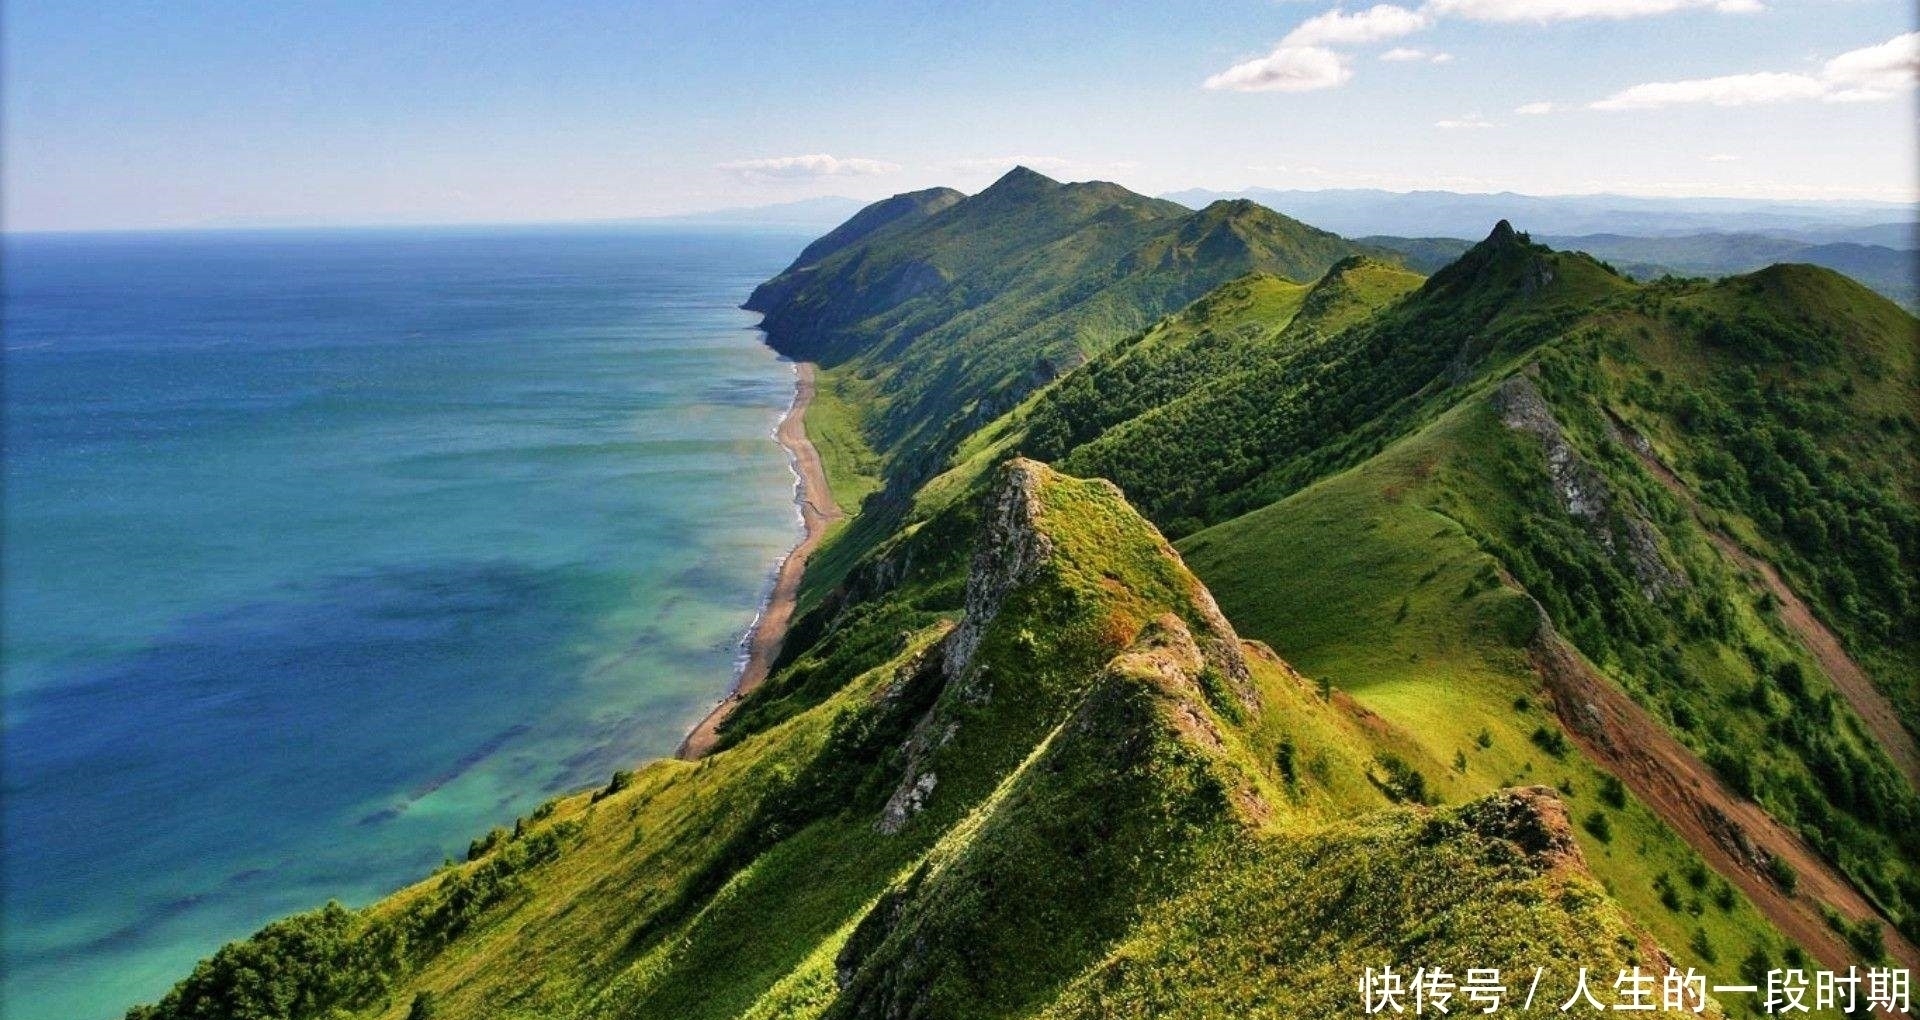 曾经是中国的最大的岛屿,面积达7万多平方